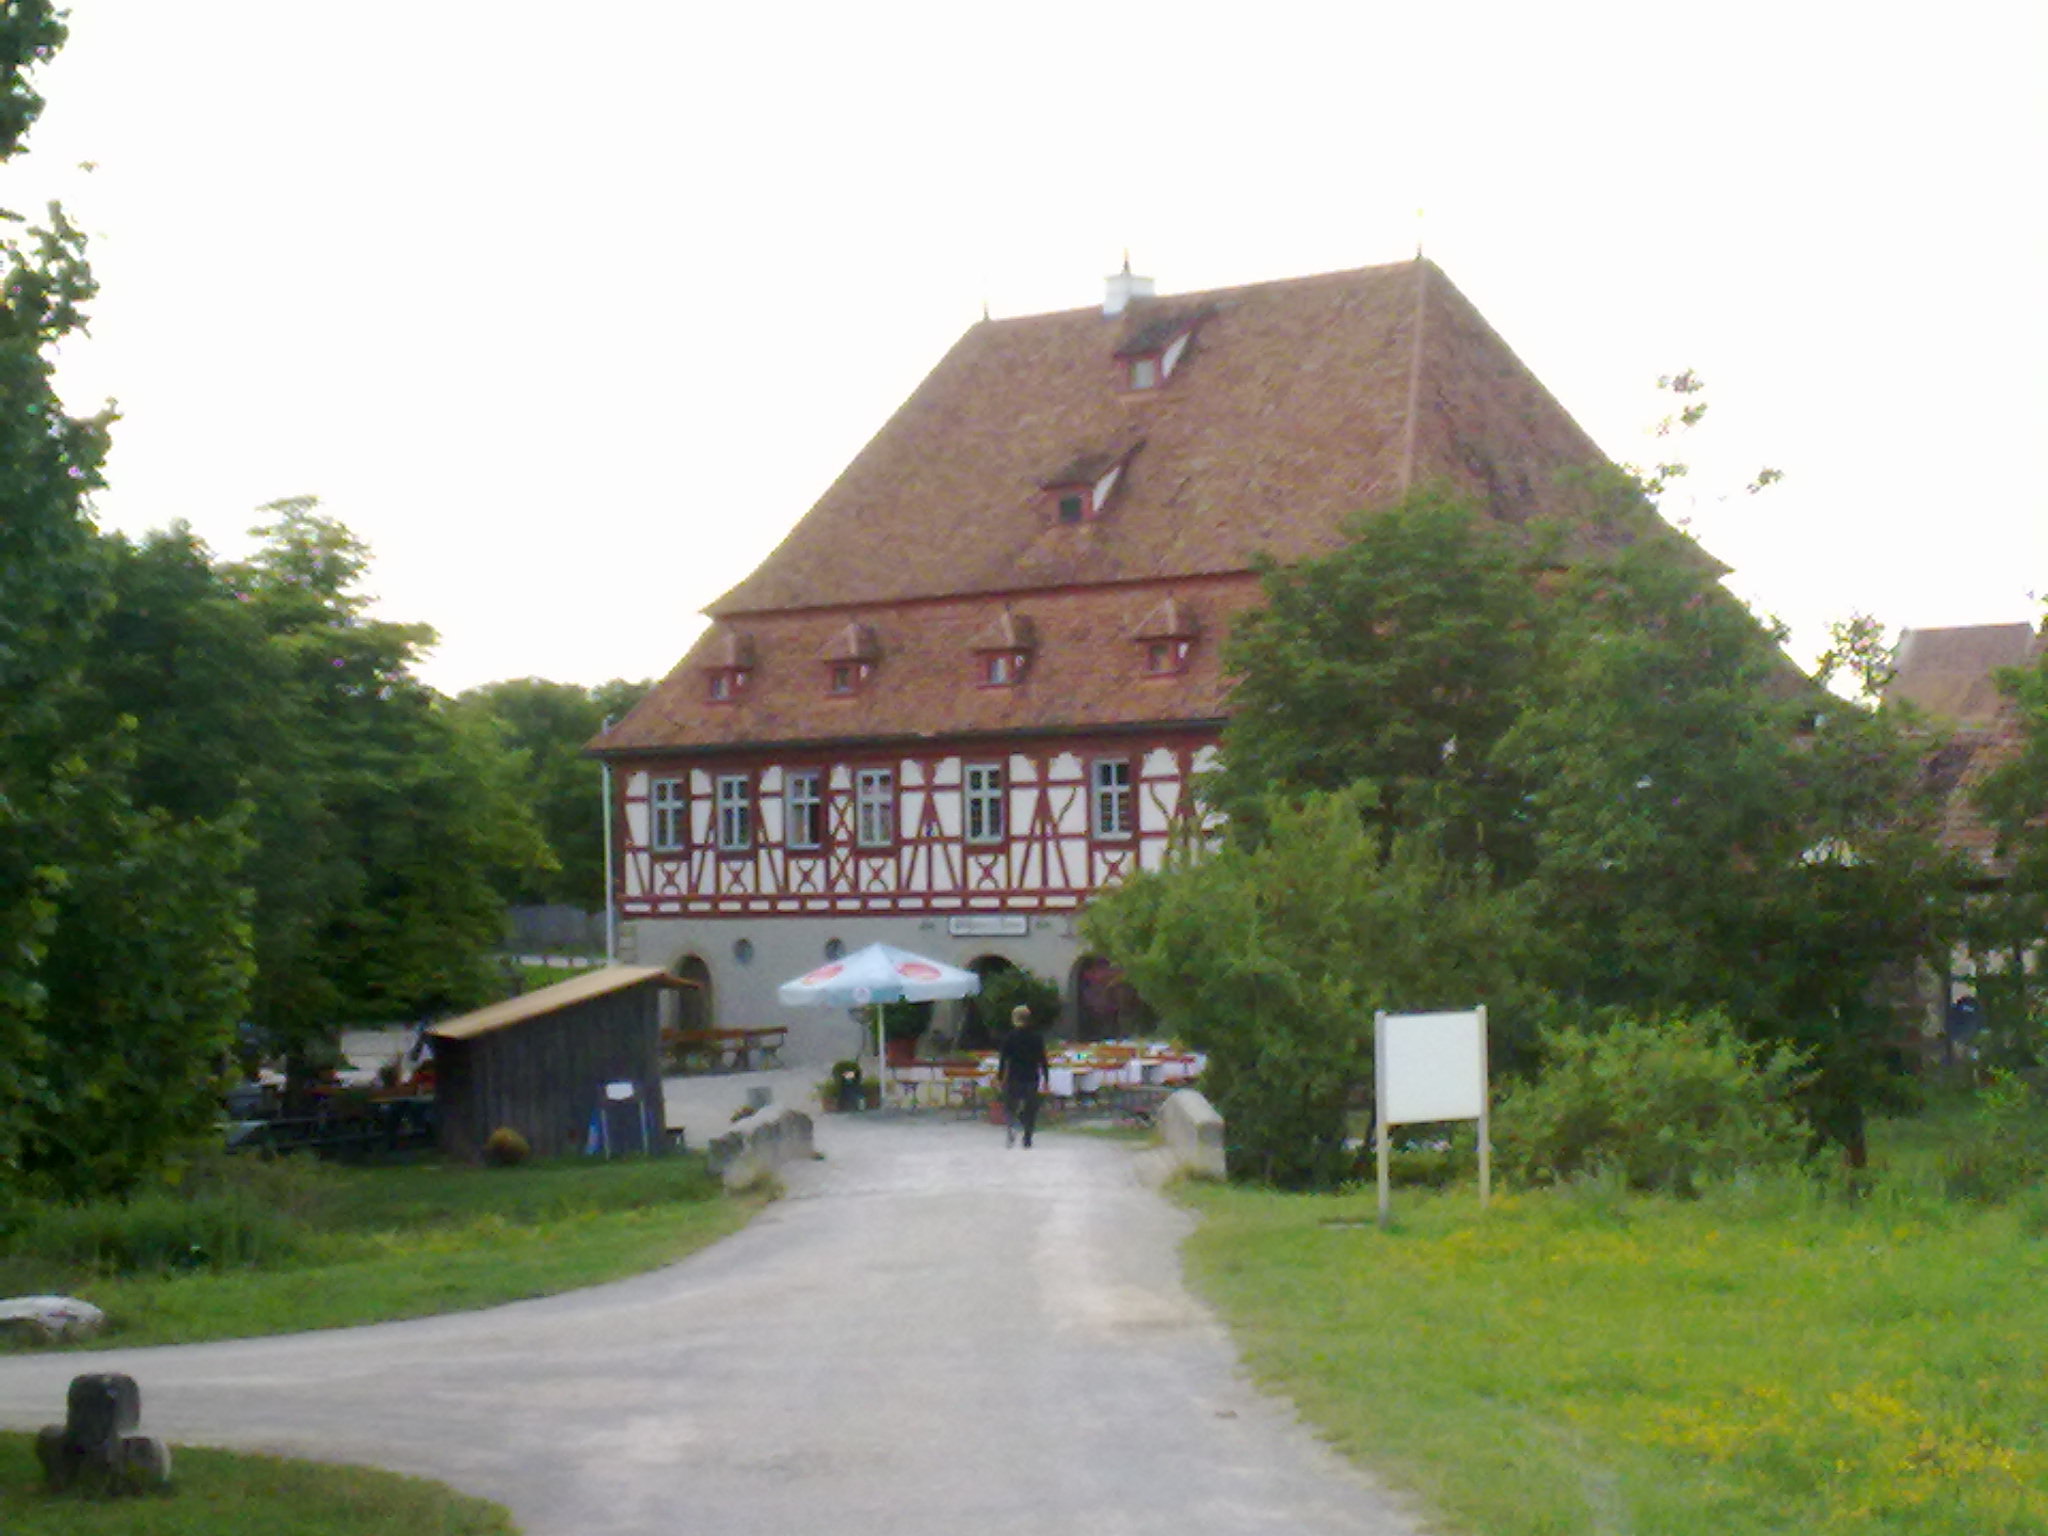 Fränkisches Freilandmuseum